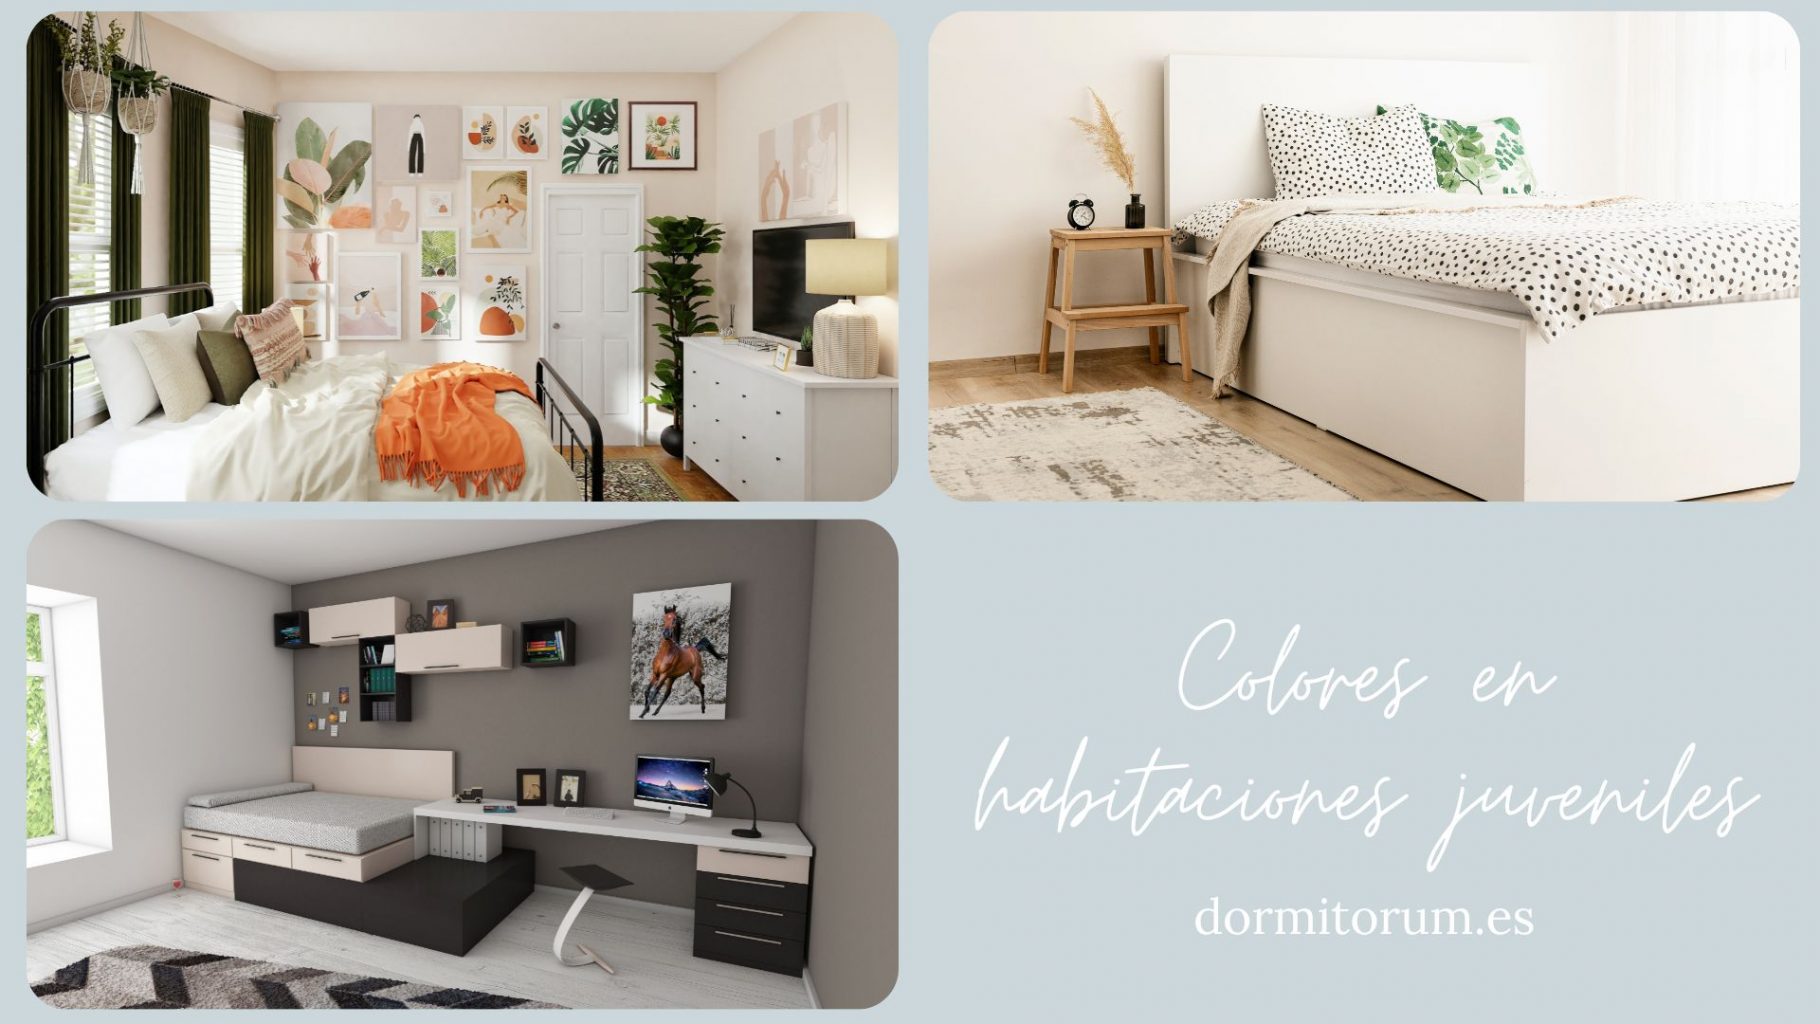 Dormitorio, Niños Estilo moderno Color marron, blanco, negro